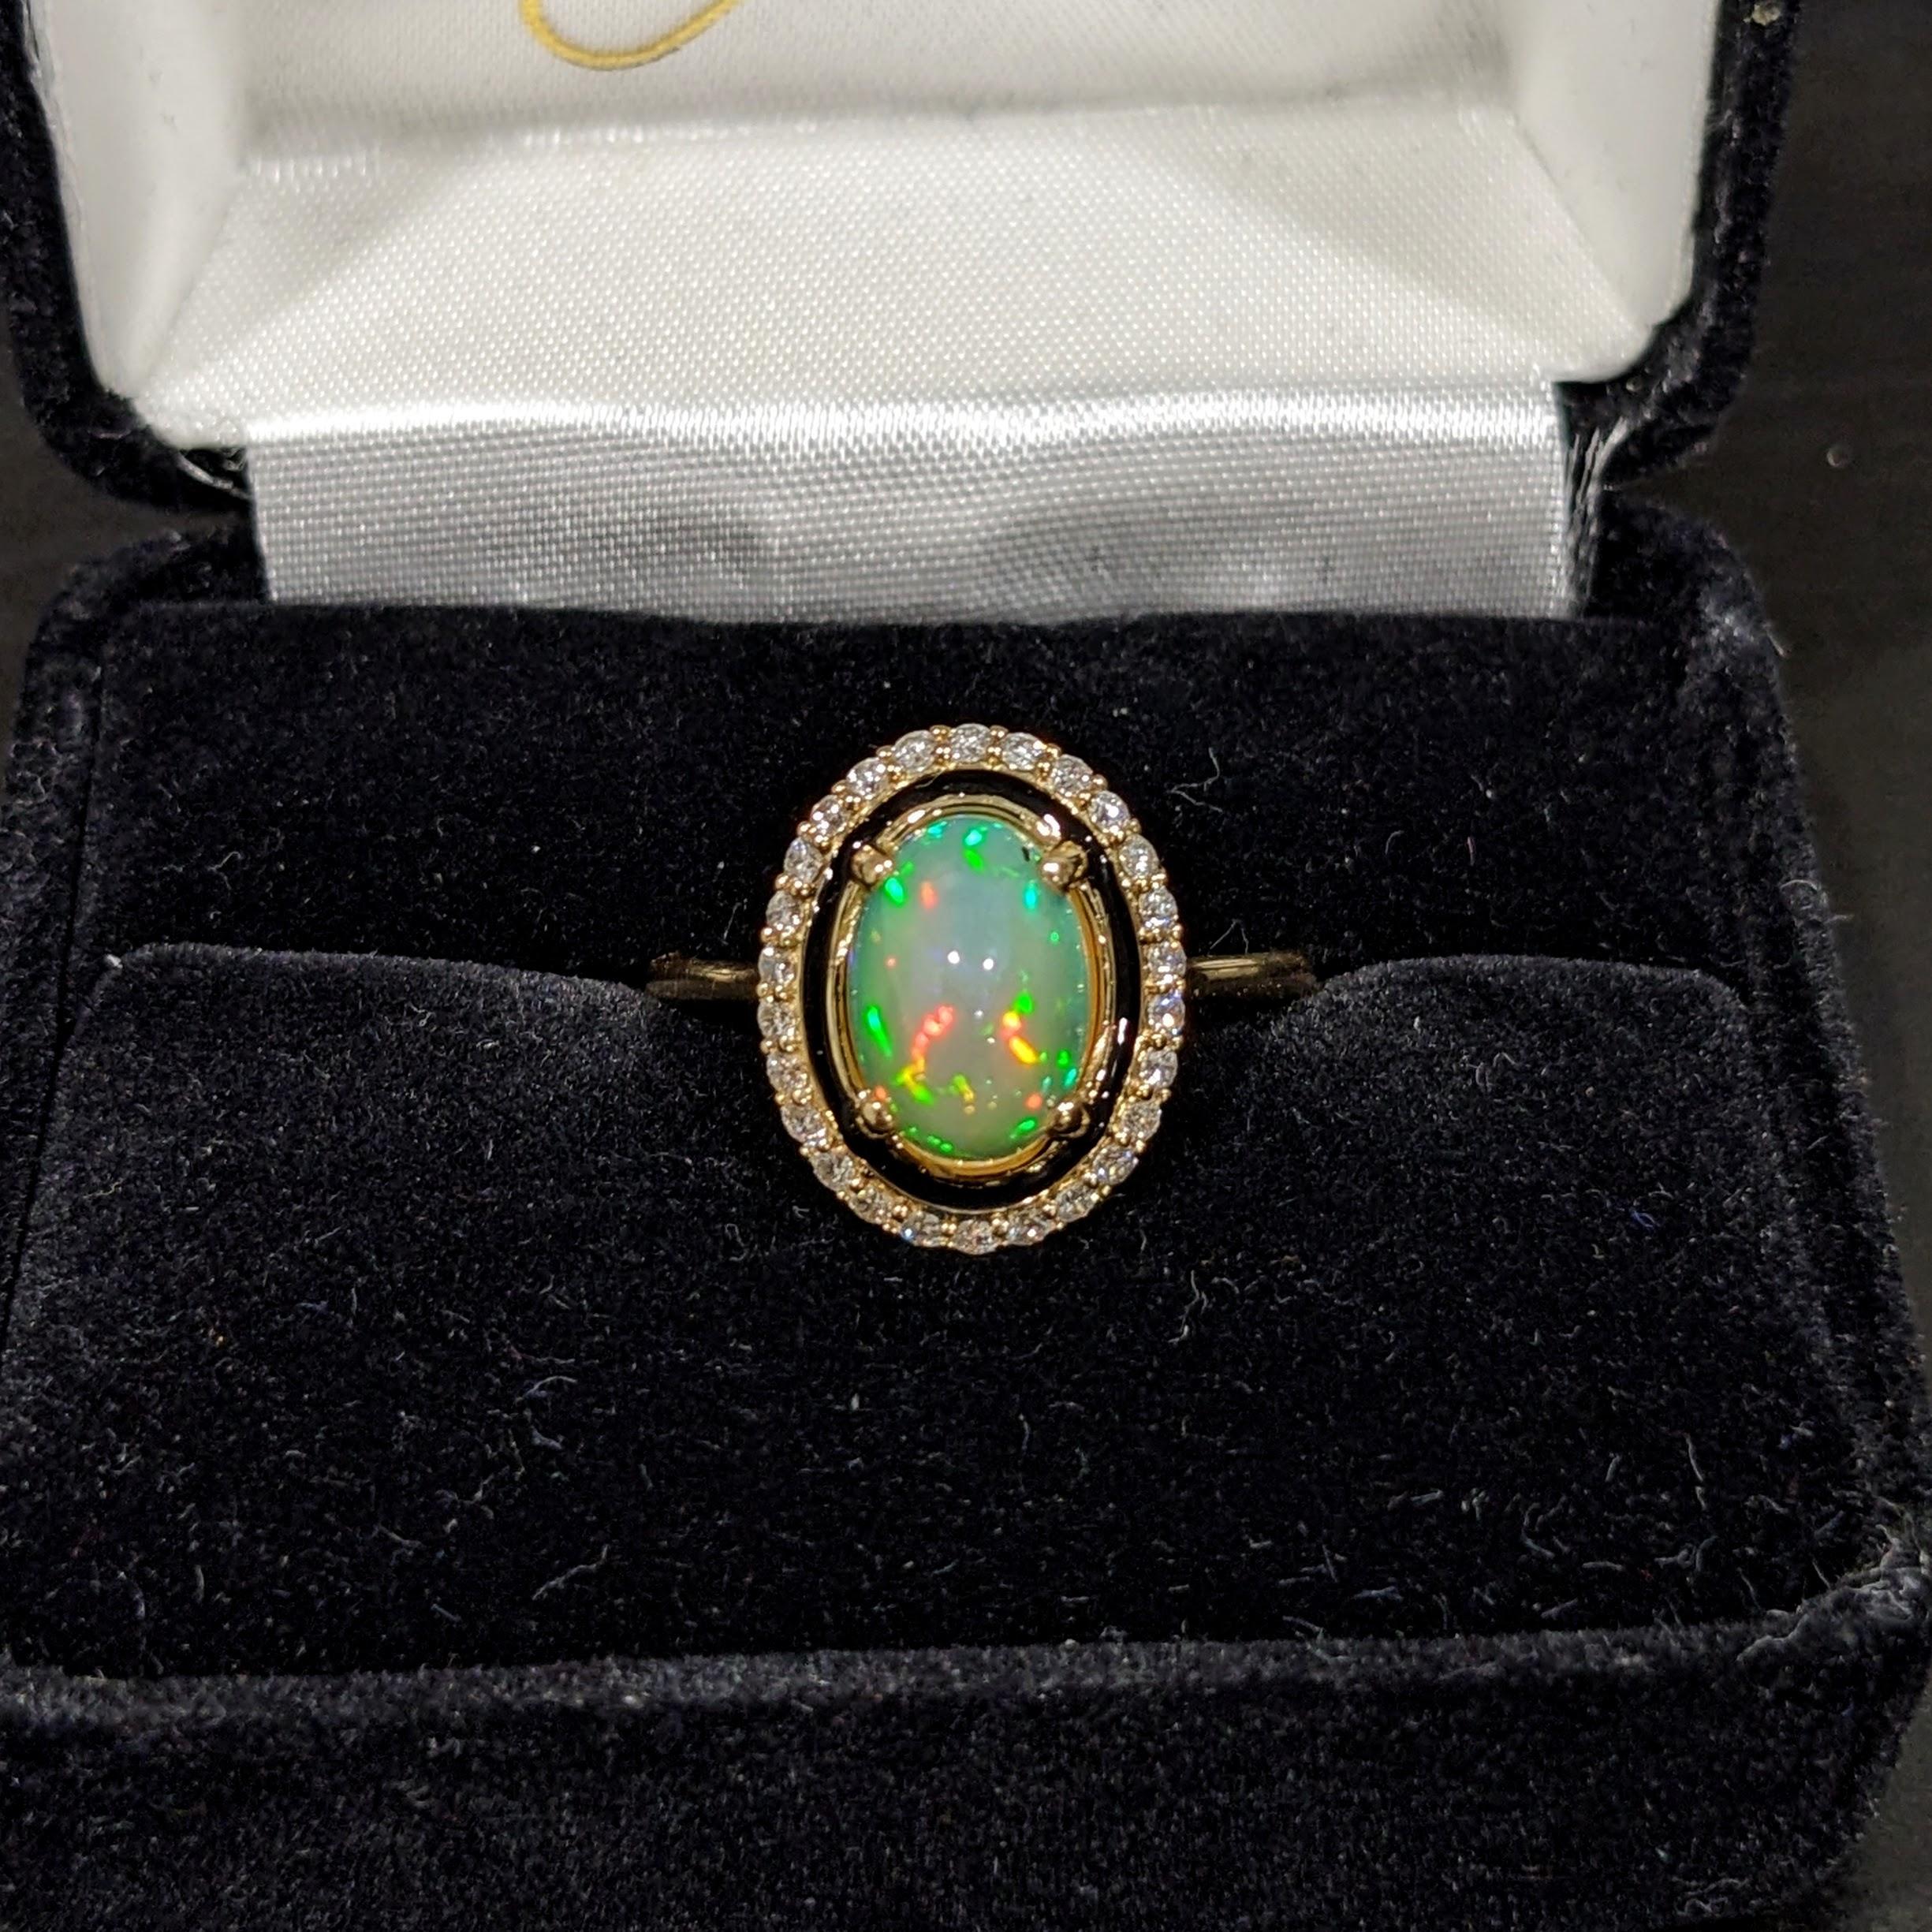 Cette bague en opale présente un incroyable jeu de couleurs mis en valeur par cette monture originale de NNJ Designs avec de l'émail noir et des diamants naturels sertis dans de l'or jaune 14k.

Spécifications :

Type d'article : Bague
Pierre